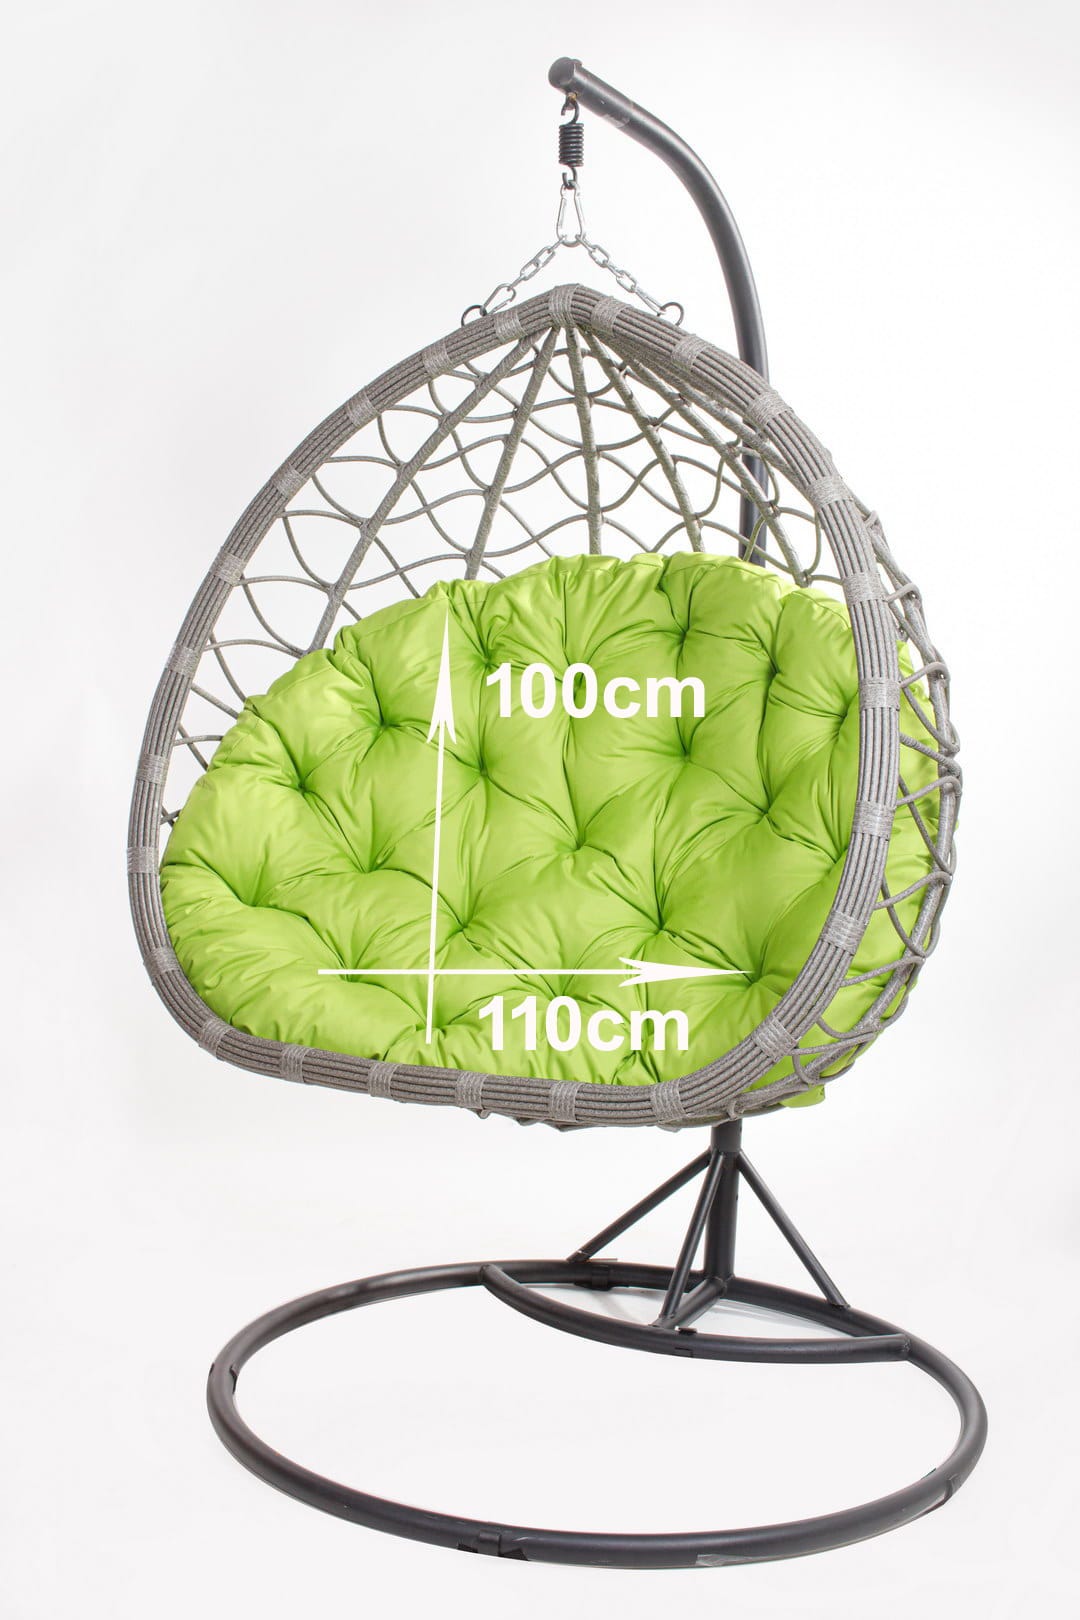 Cuscini per sedia a dondolo da giardino 110 x 100cm, Cuscino per sedia  sospesa, Cuscino per sedia sospesa amaca al limone